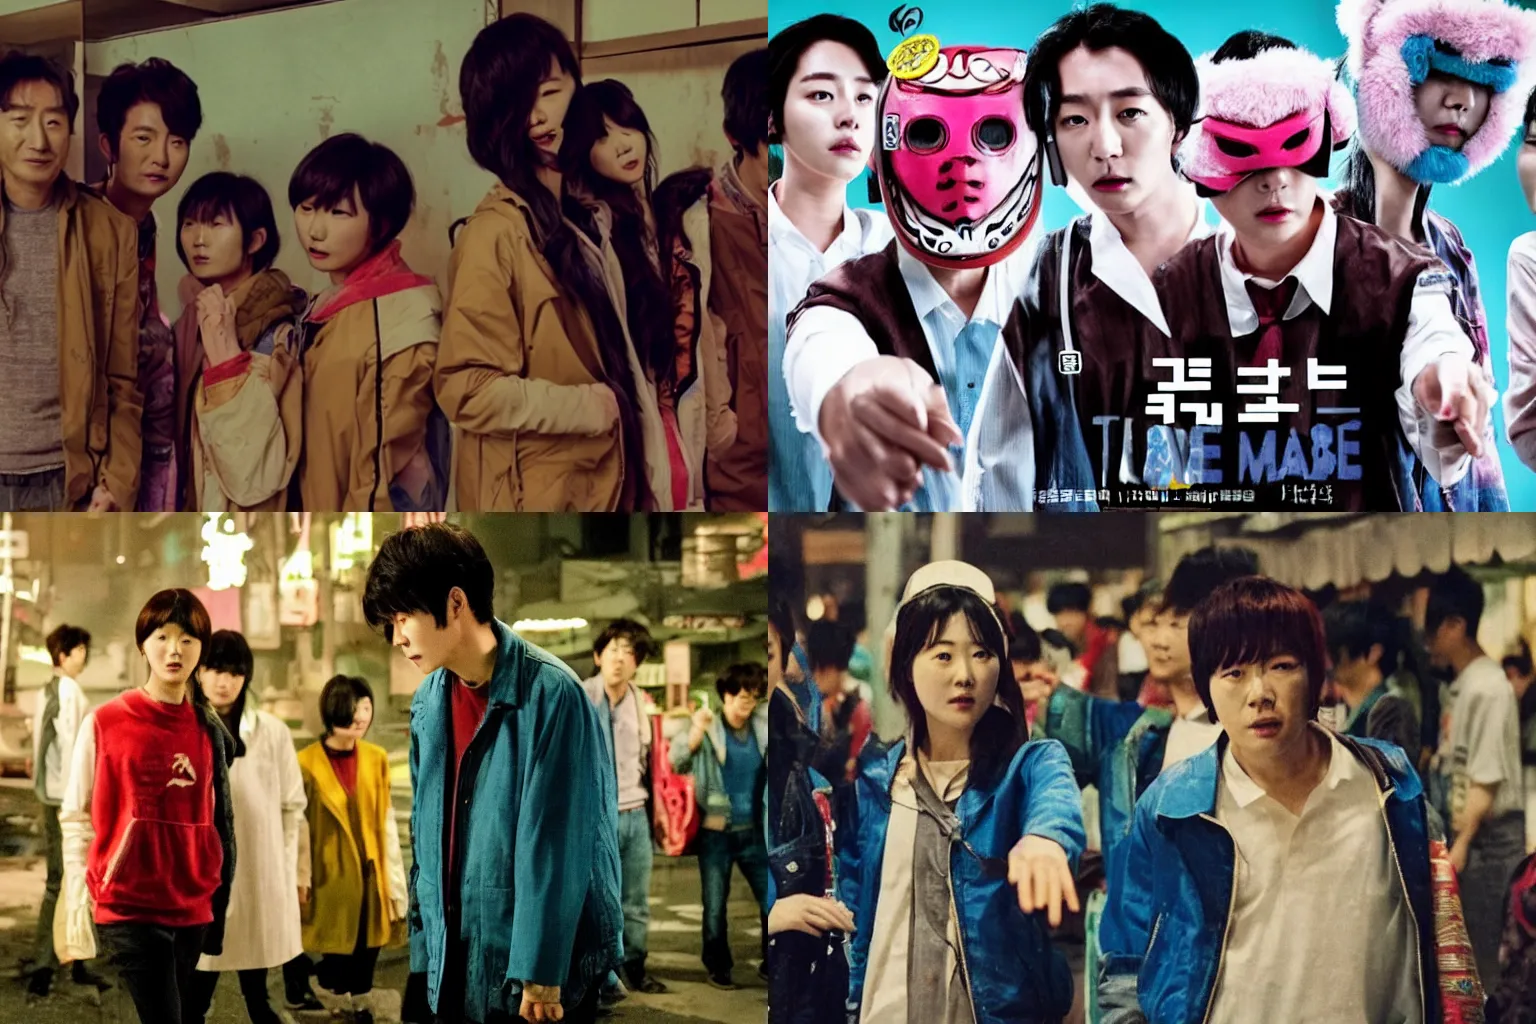 Prompt: korean film still from korean adaptation of hotline miami